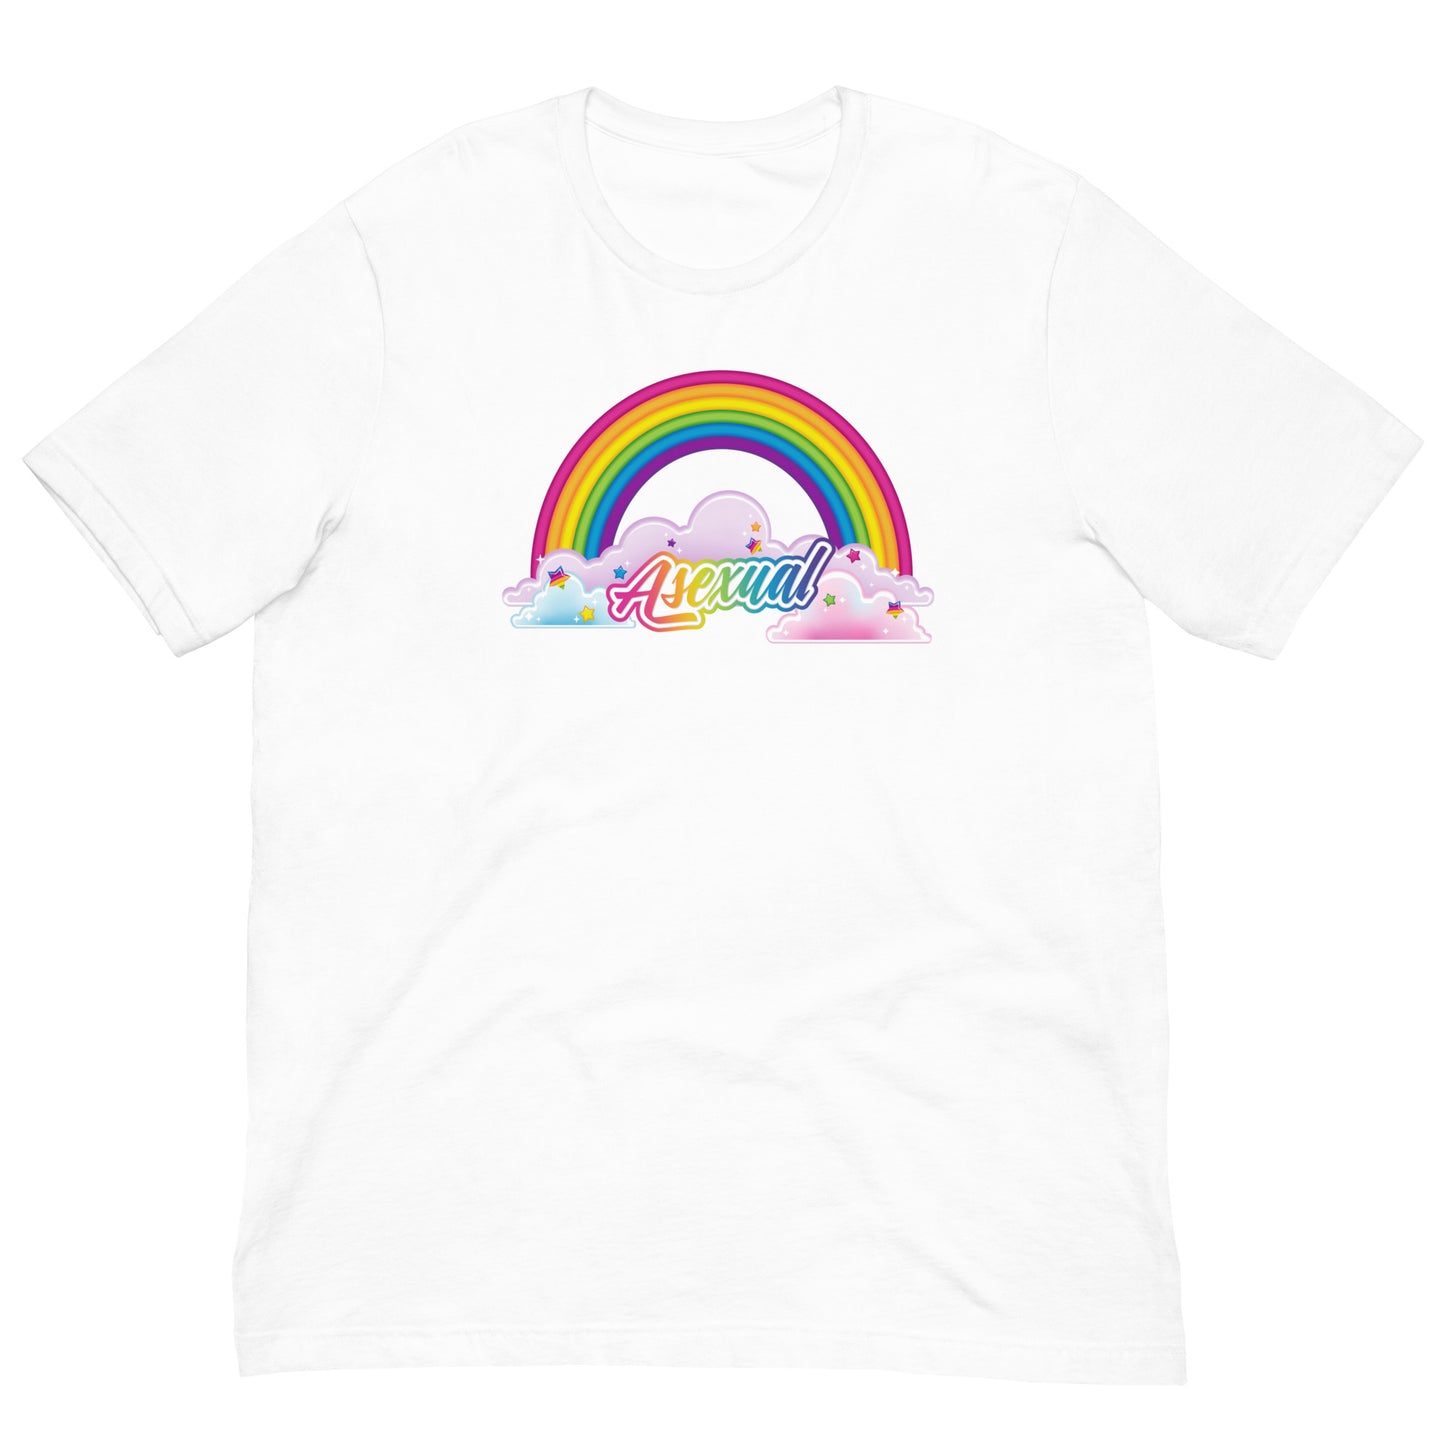 LGBTQIA Frank T-Shirt: Asexual